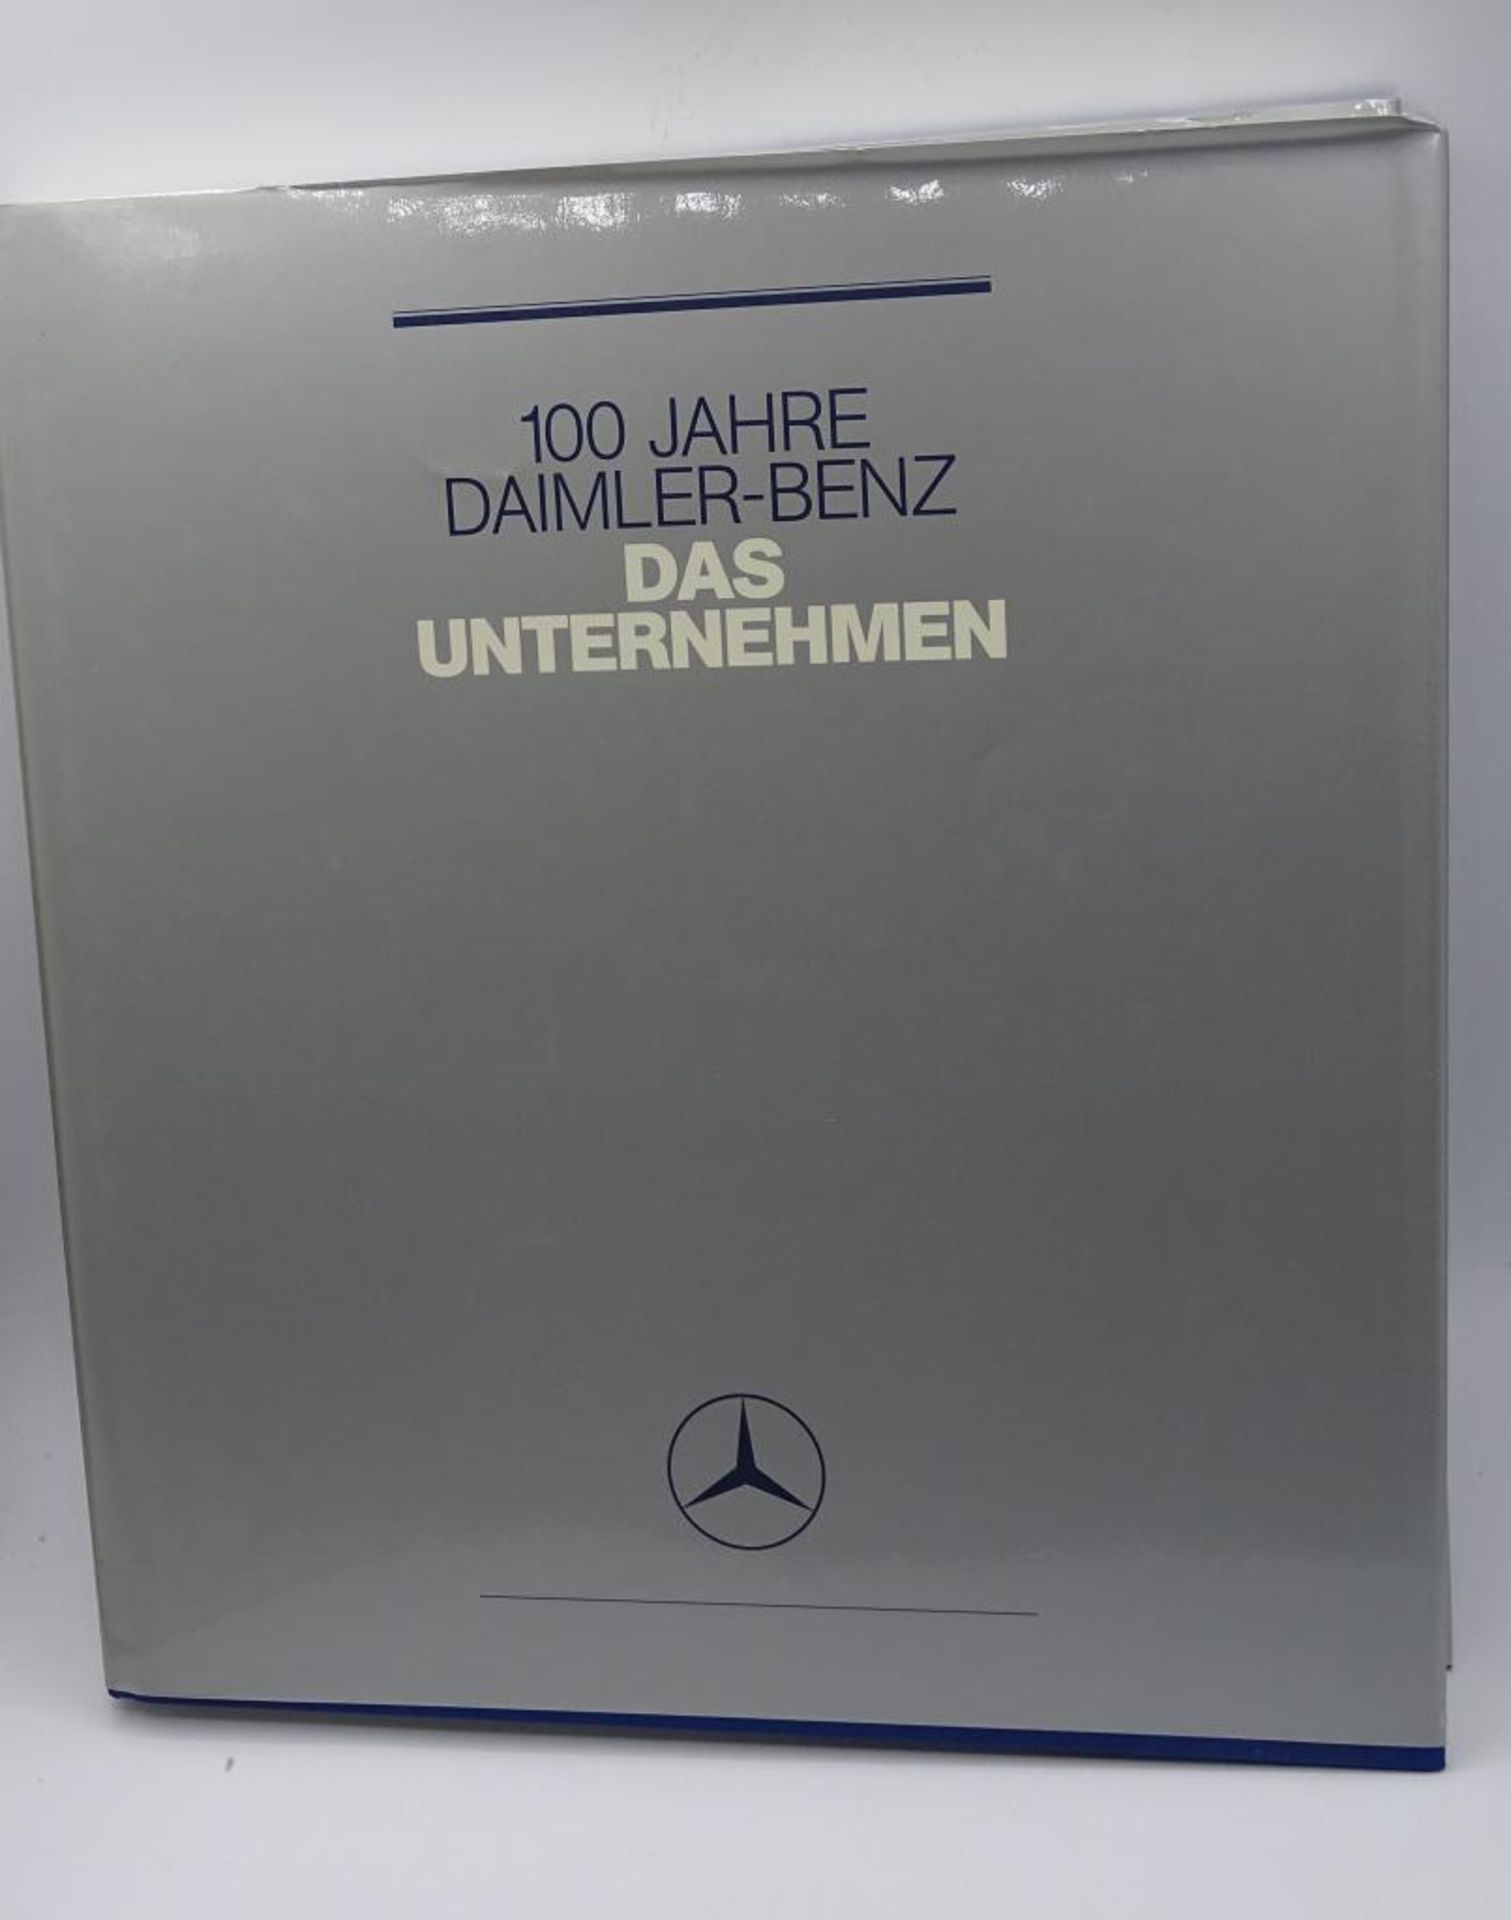 100 Jahre Daimler-Bezn, Zwei Bände, "Die Technik und das Unternehmen", 1986,im Schube - Bild 10 aus 10